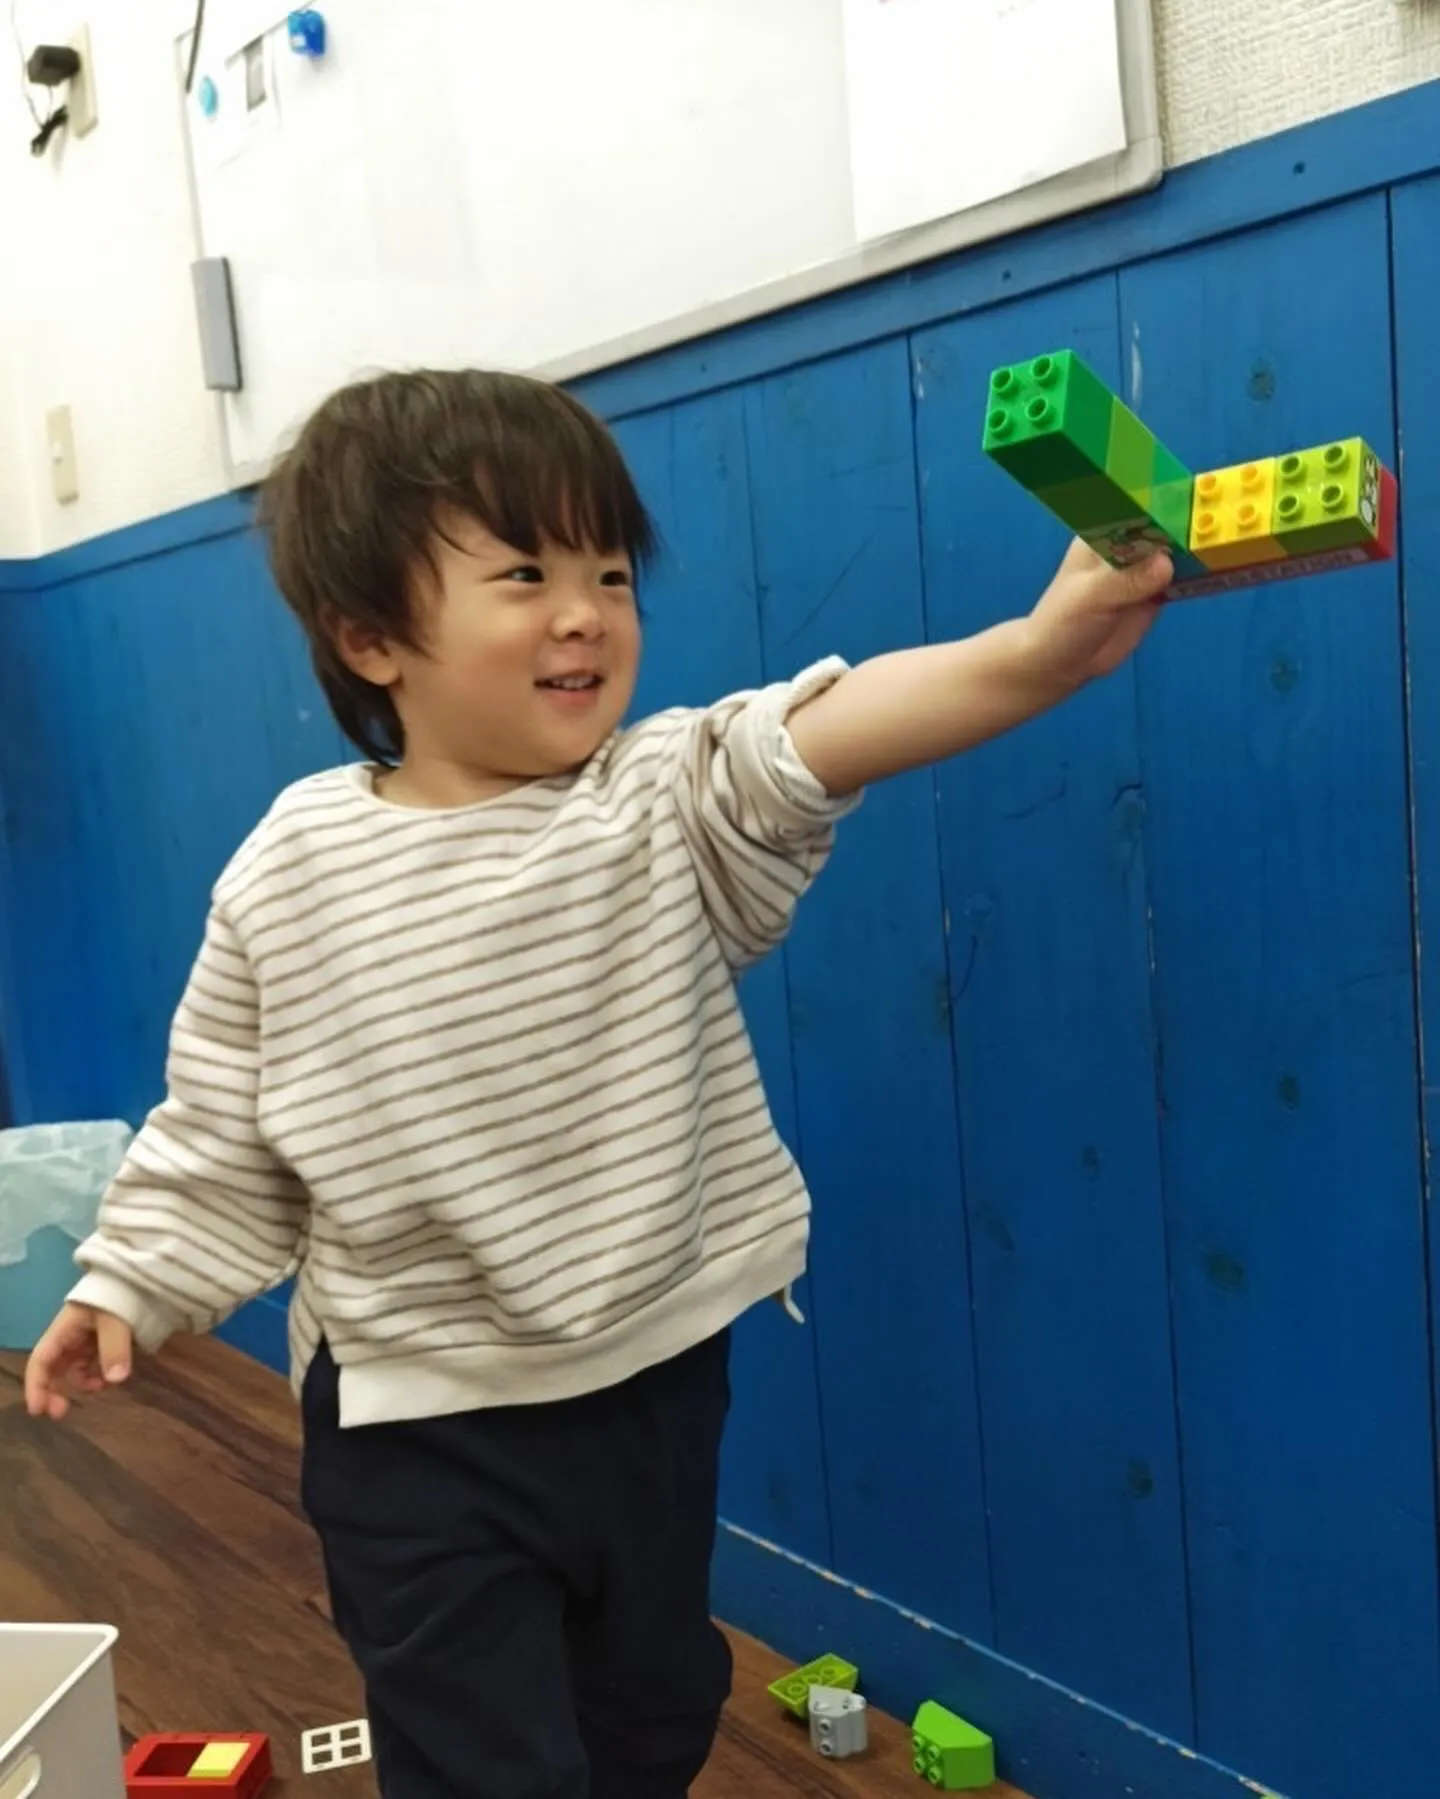 3/5(火) Toddler class today🍳